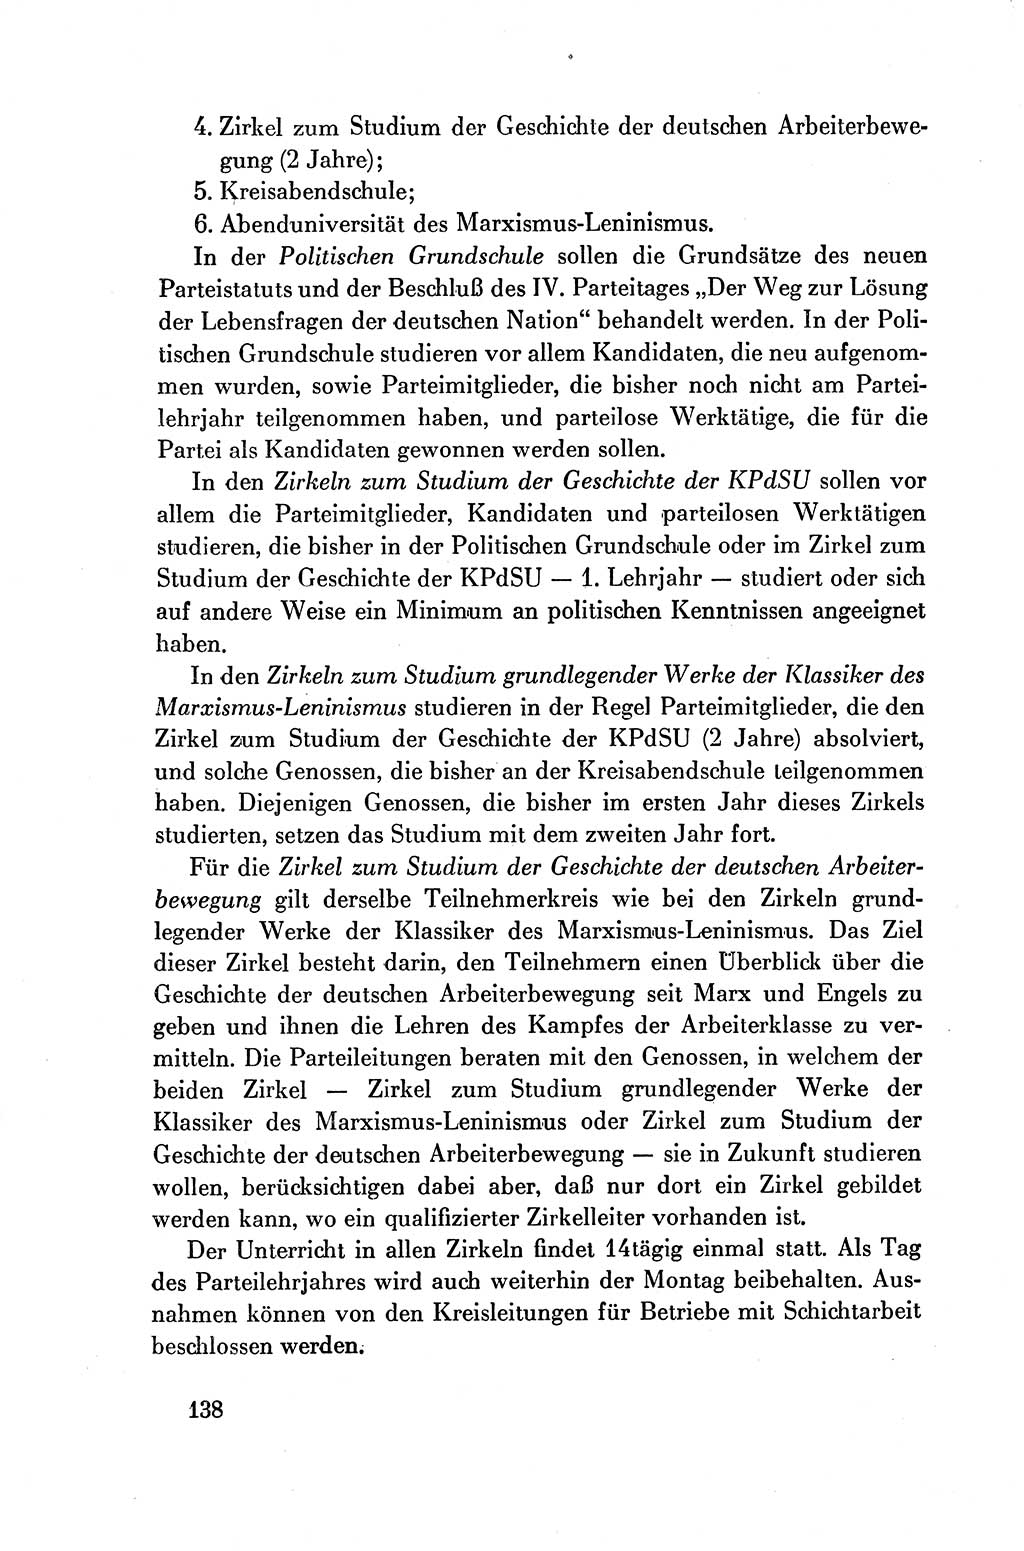 Dokumente der Sozialistischen Einheitspartei Deutschlands (SED) [Deutsche Demokratische Republik (DDR)] 1954-1955, Seite 138 (Dok. SED DDR 1954-1955, S. 138)